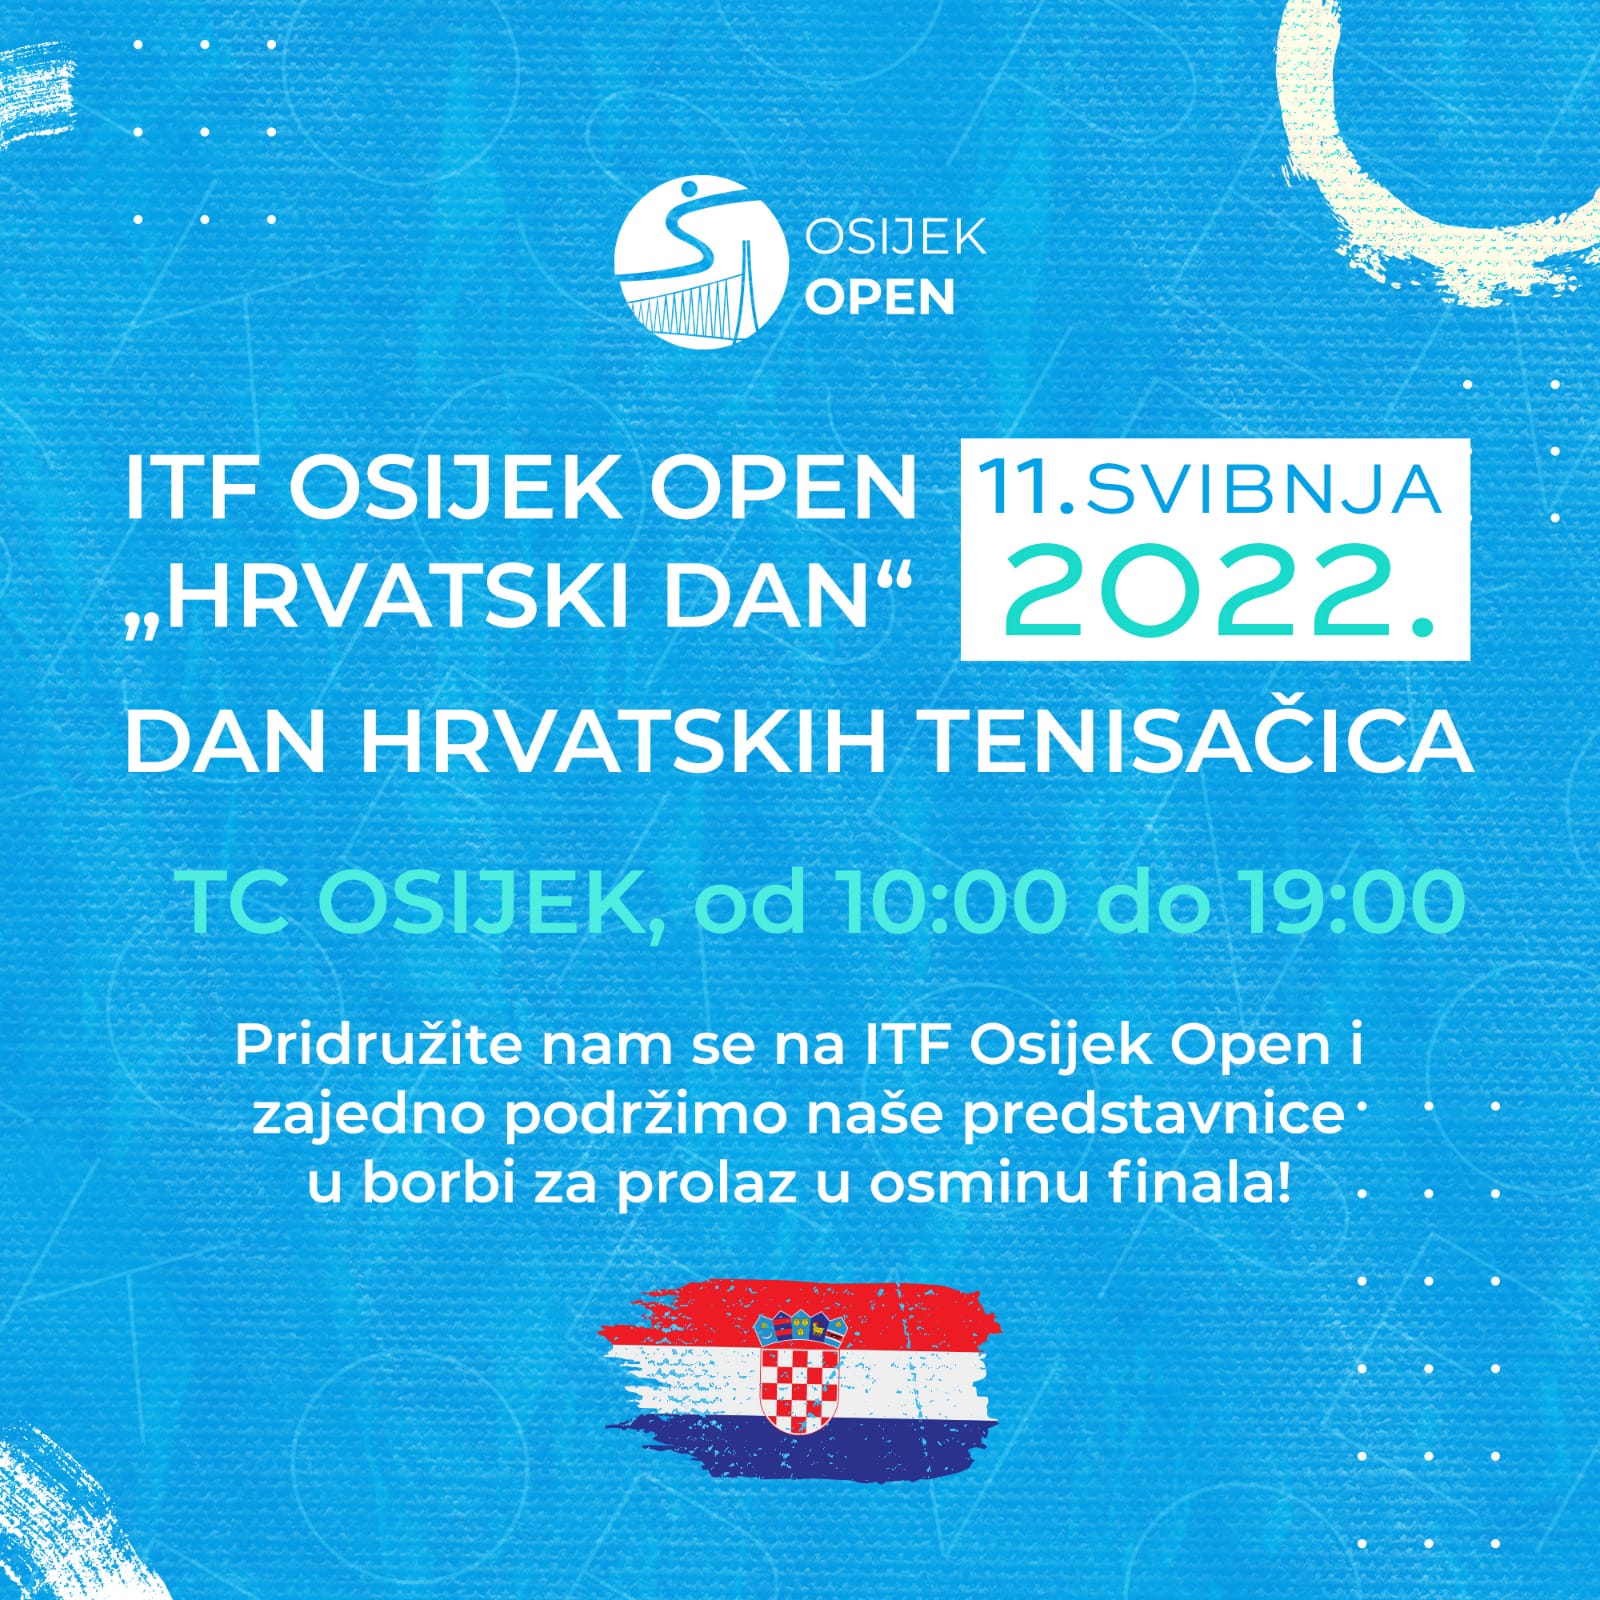 Srijeda je “Hrvatski dan” na ITF Osijek Openu